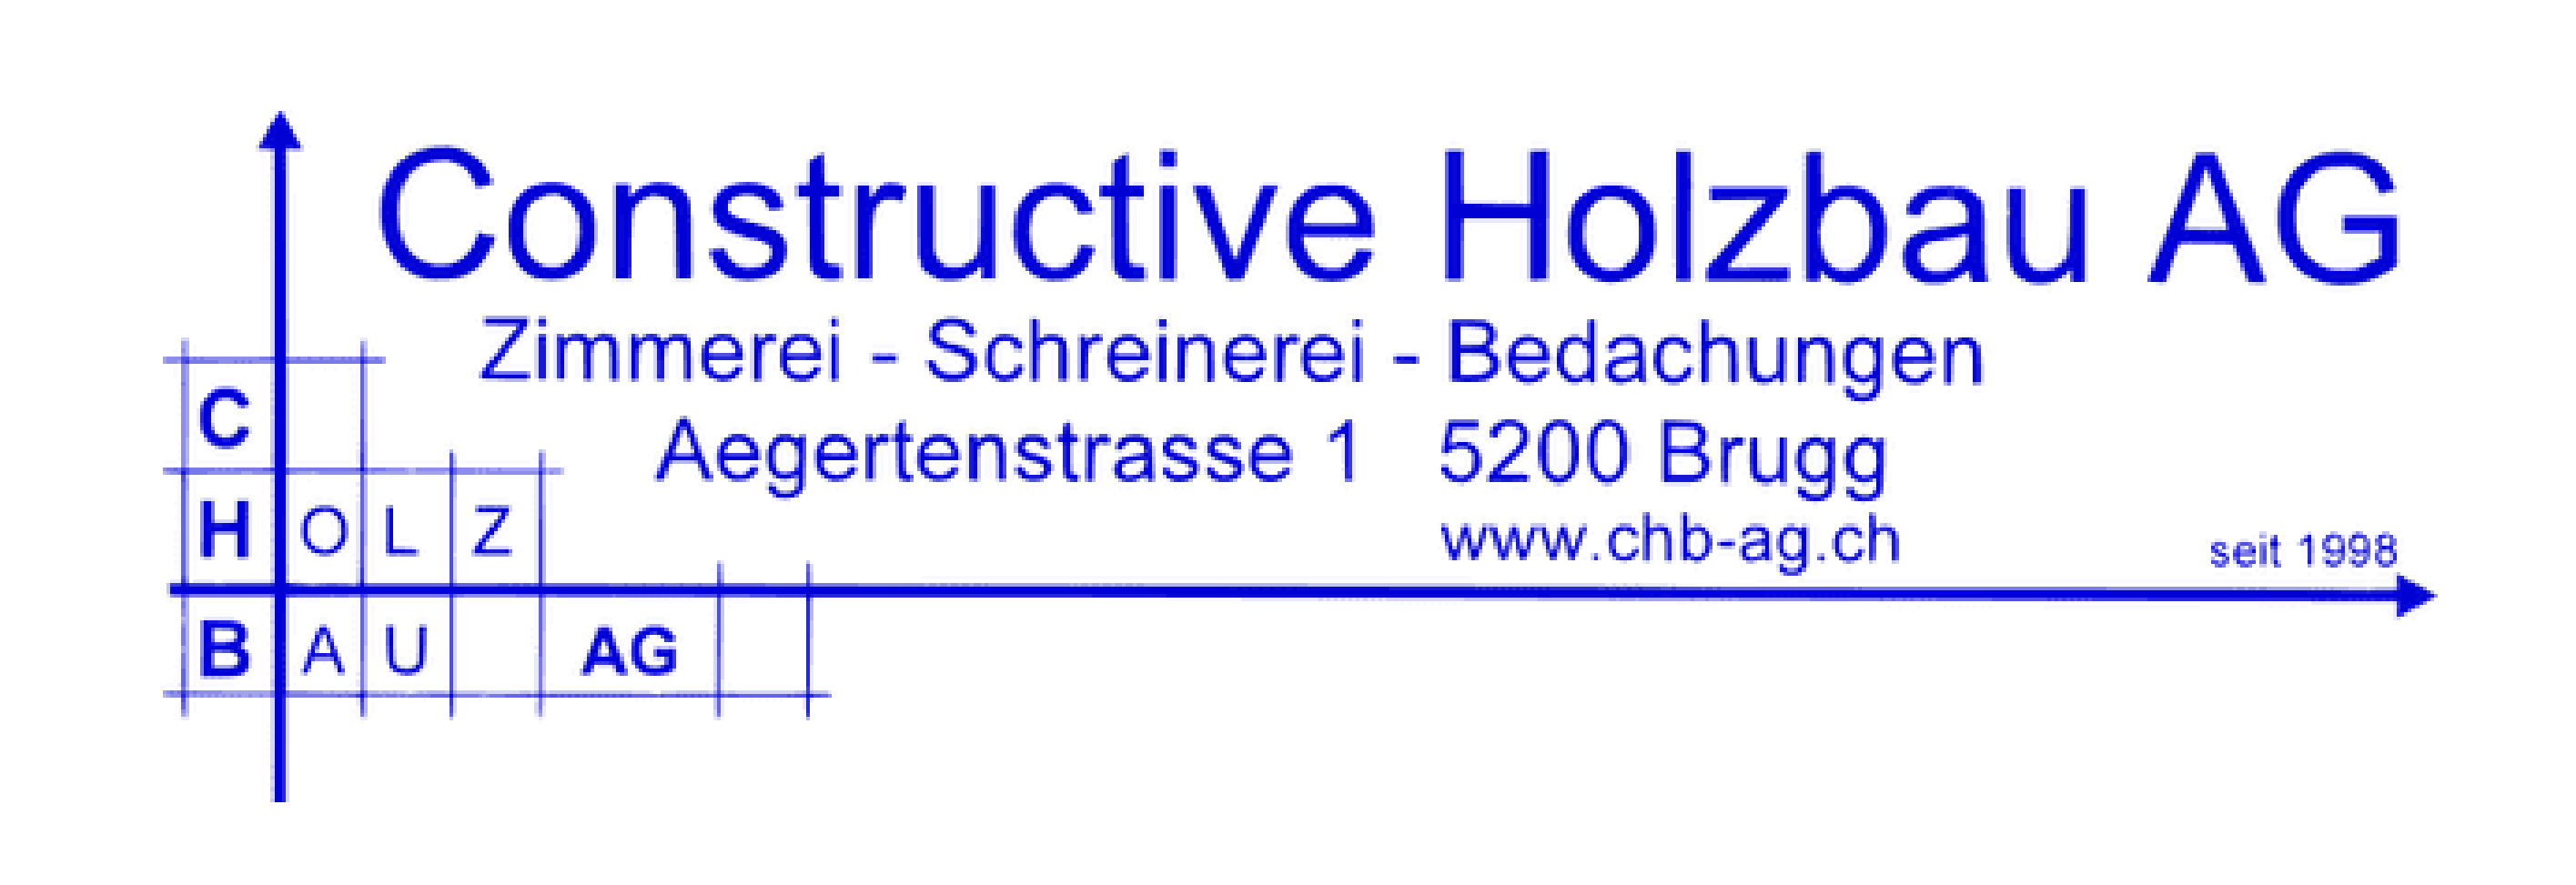 Constructive Holzbau AG